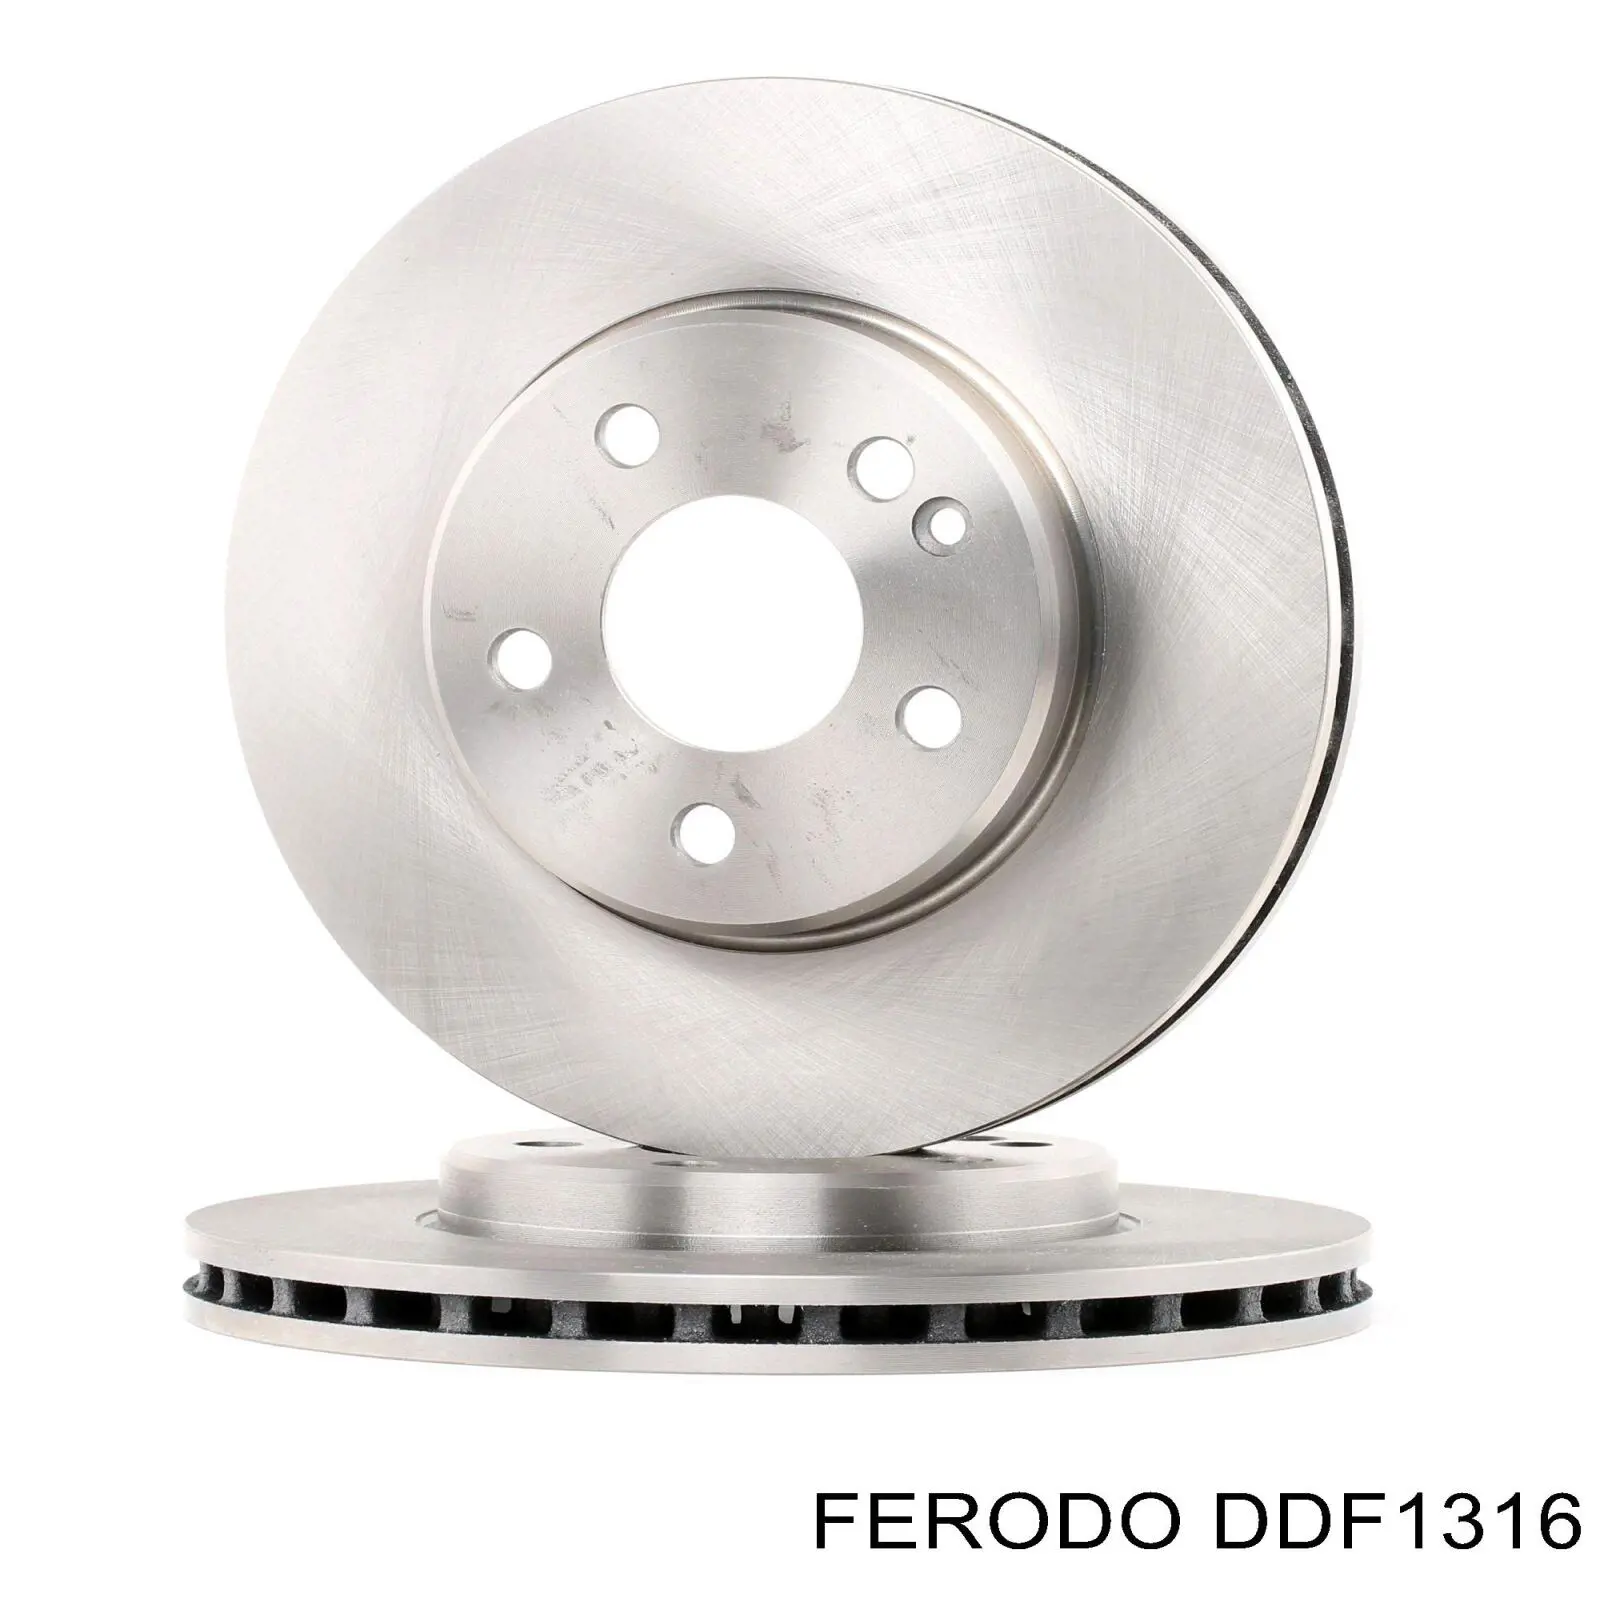 DDF1316 Ferodo disco do freio dianteiro